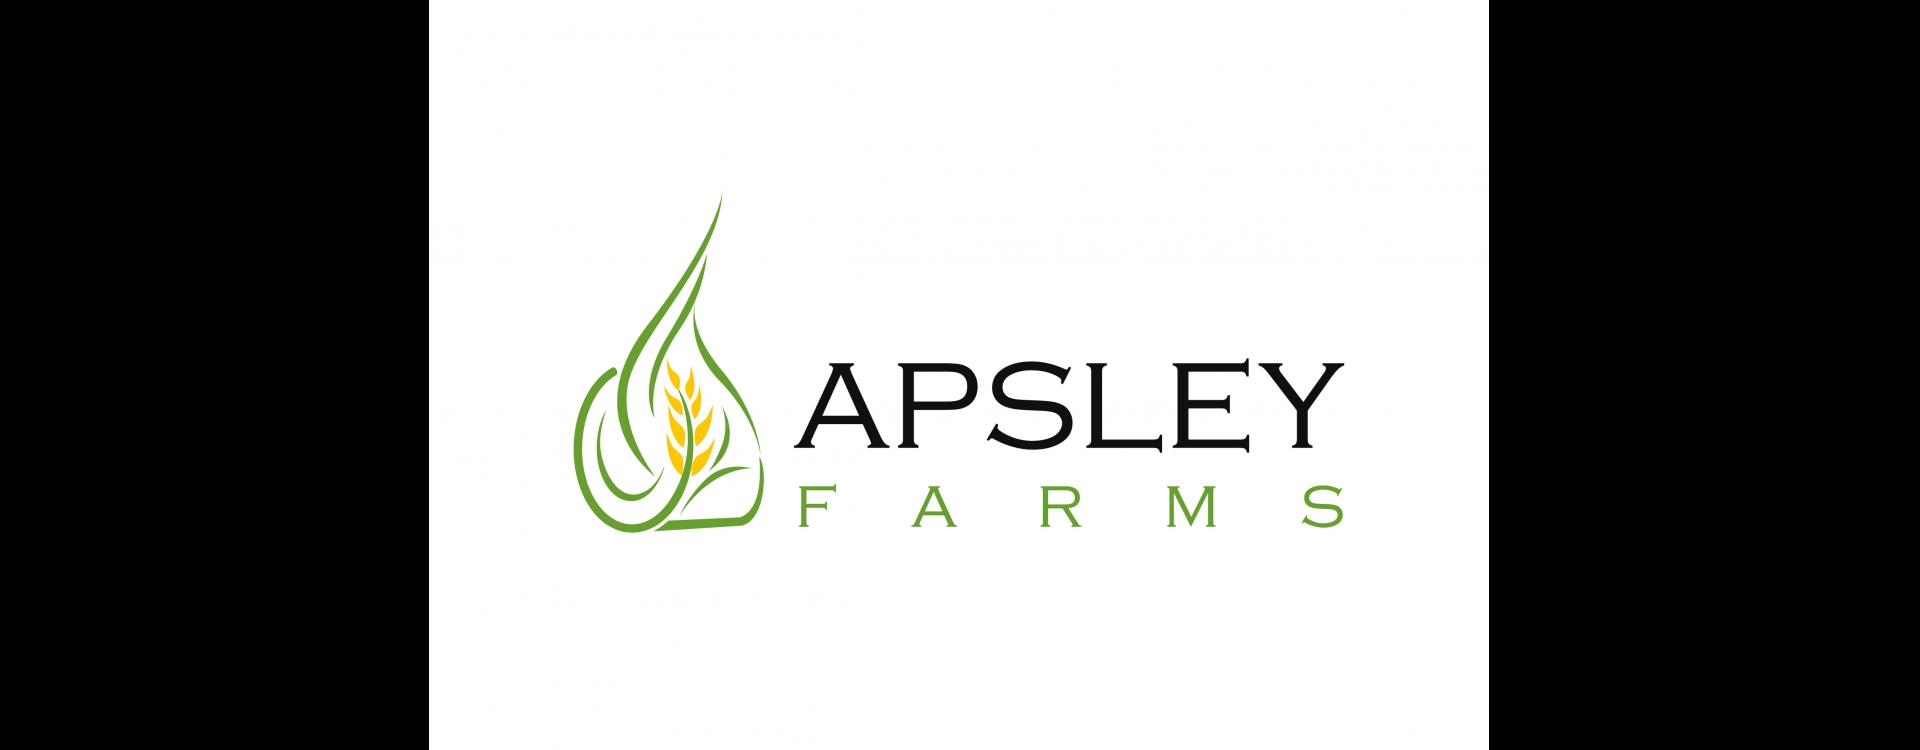 apsley farms logo 4ed0eefe8a59591c71f66fc2a3359ec2